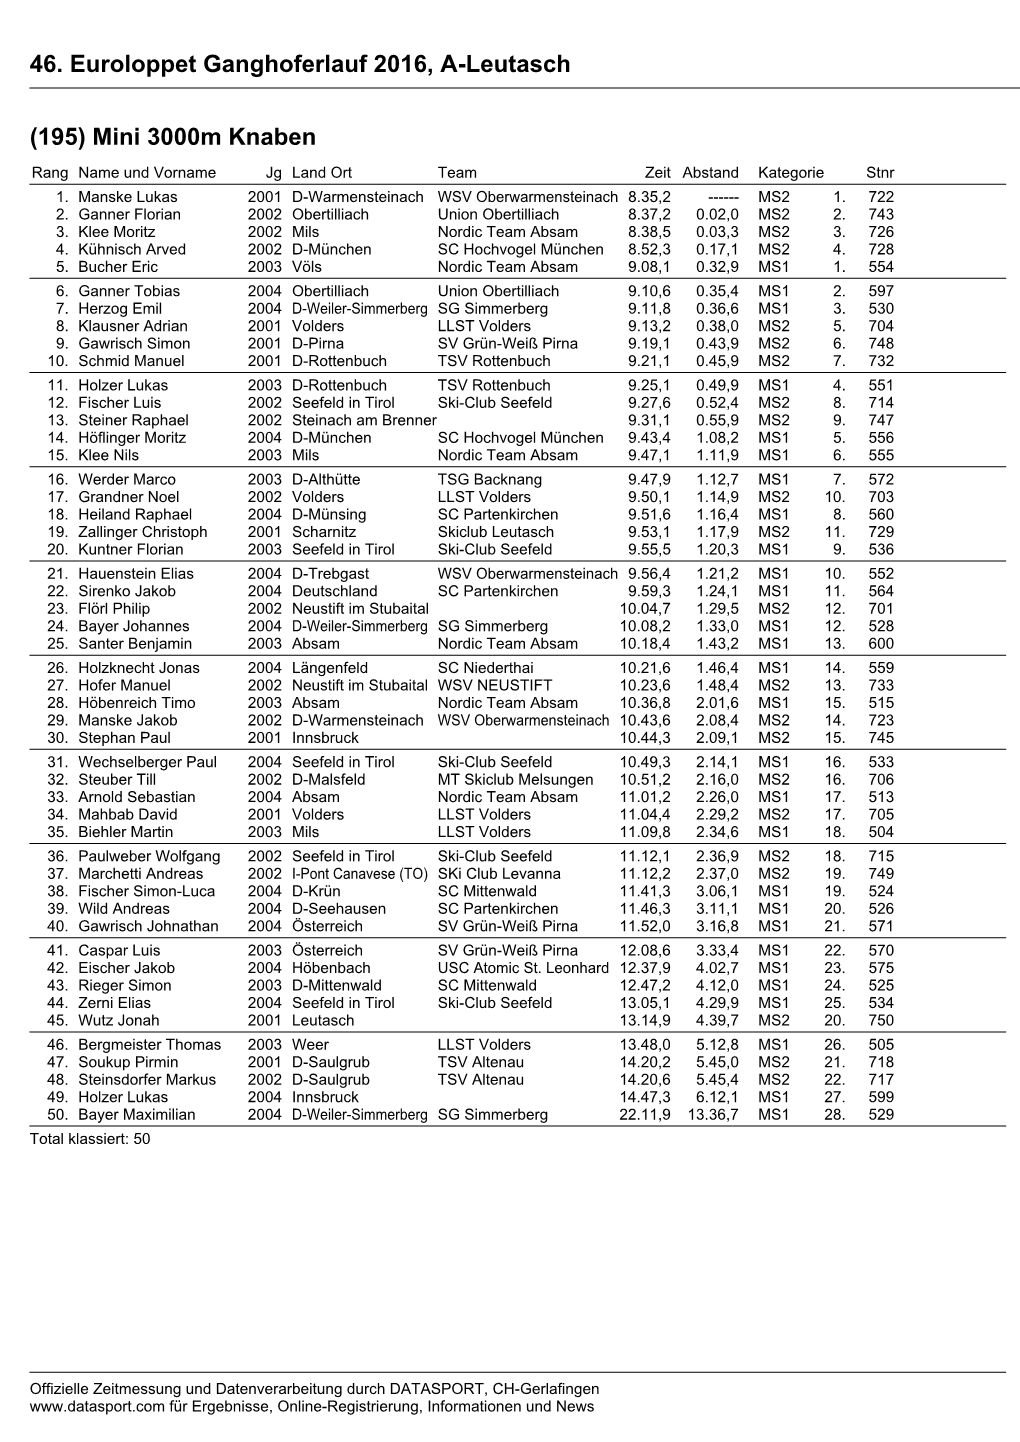 46. Euroloppet Ganghoferlauf 2016, A-Leutasch (195)